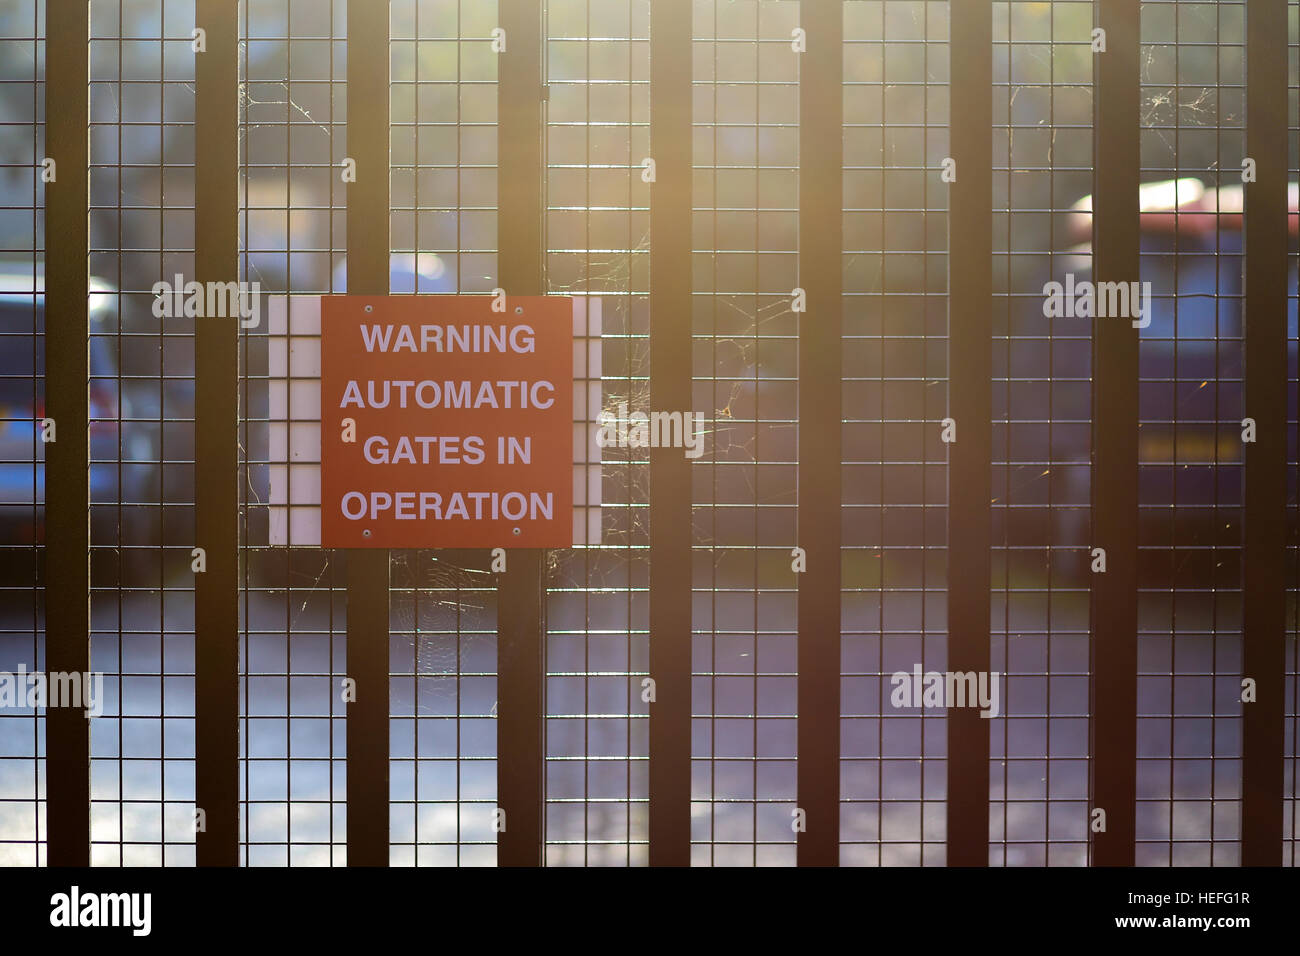 Portes automatiques d'avertissement à l'opération, signe rouge sur la porte de métal en plein soleil Banque D'Images